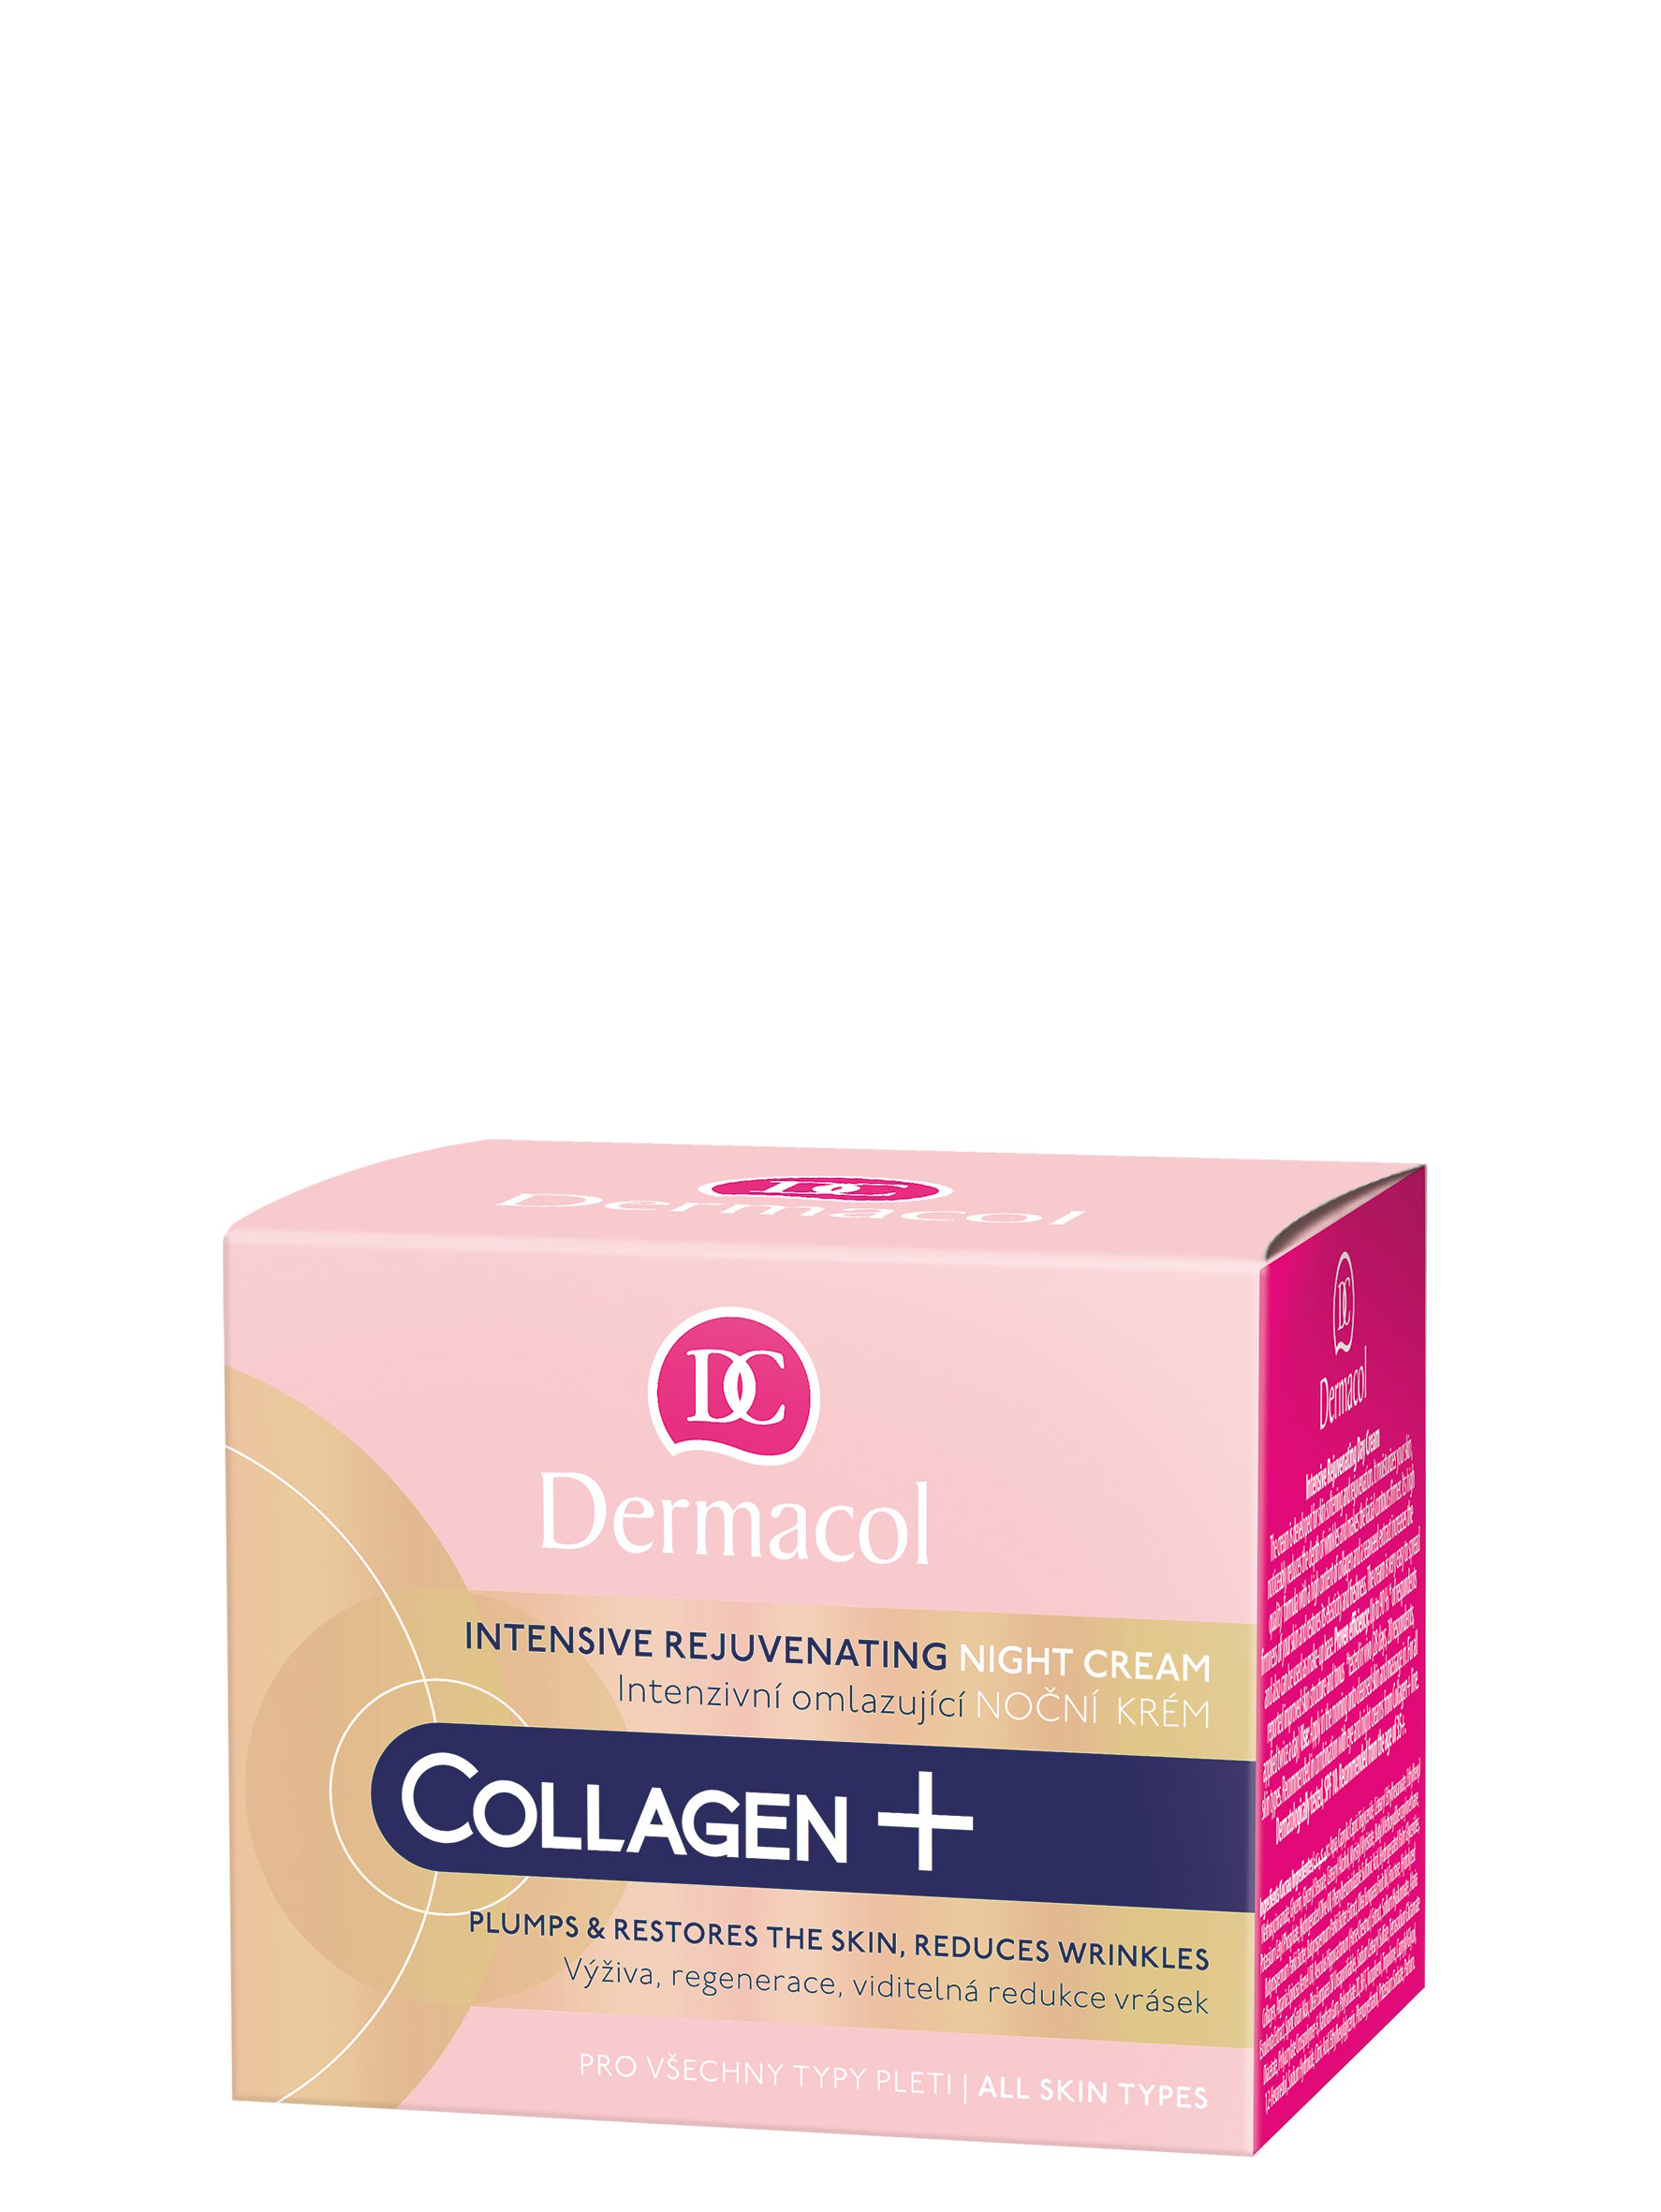 Інтенсивно-омолоджуючий нічний крем для обличчя Dermacol Collagen Plus, 50 мл - фото 1